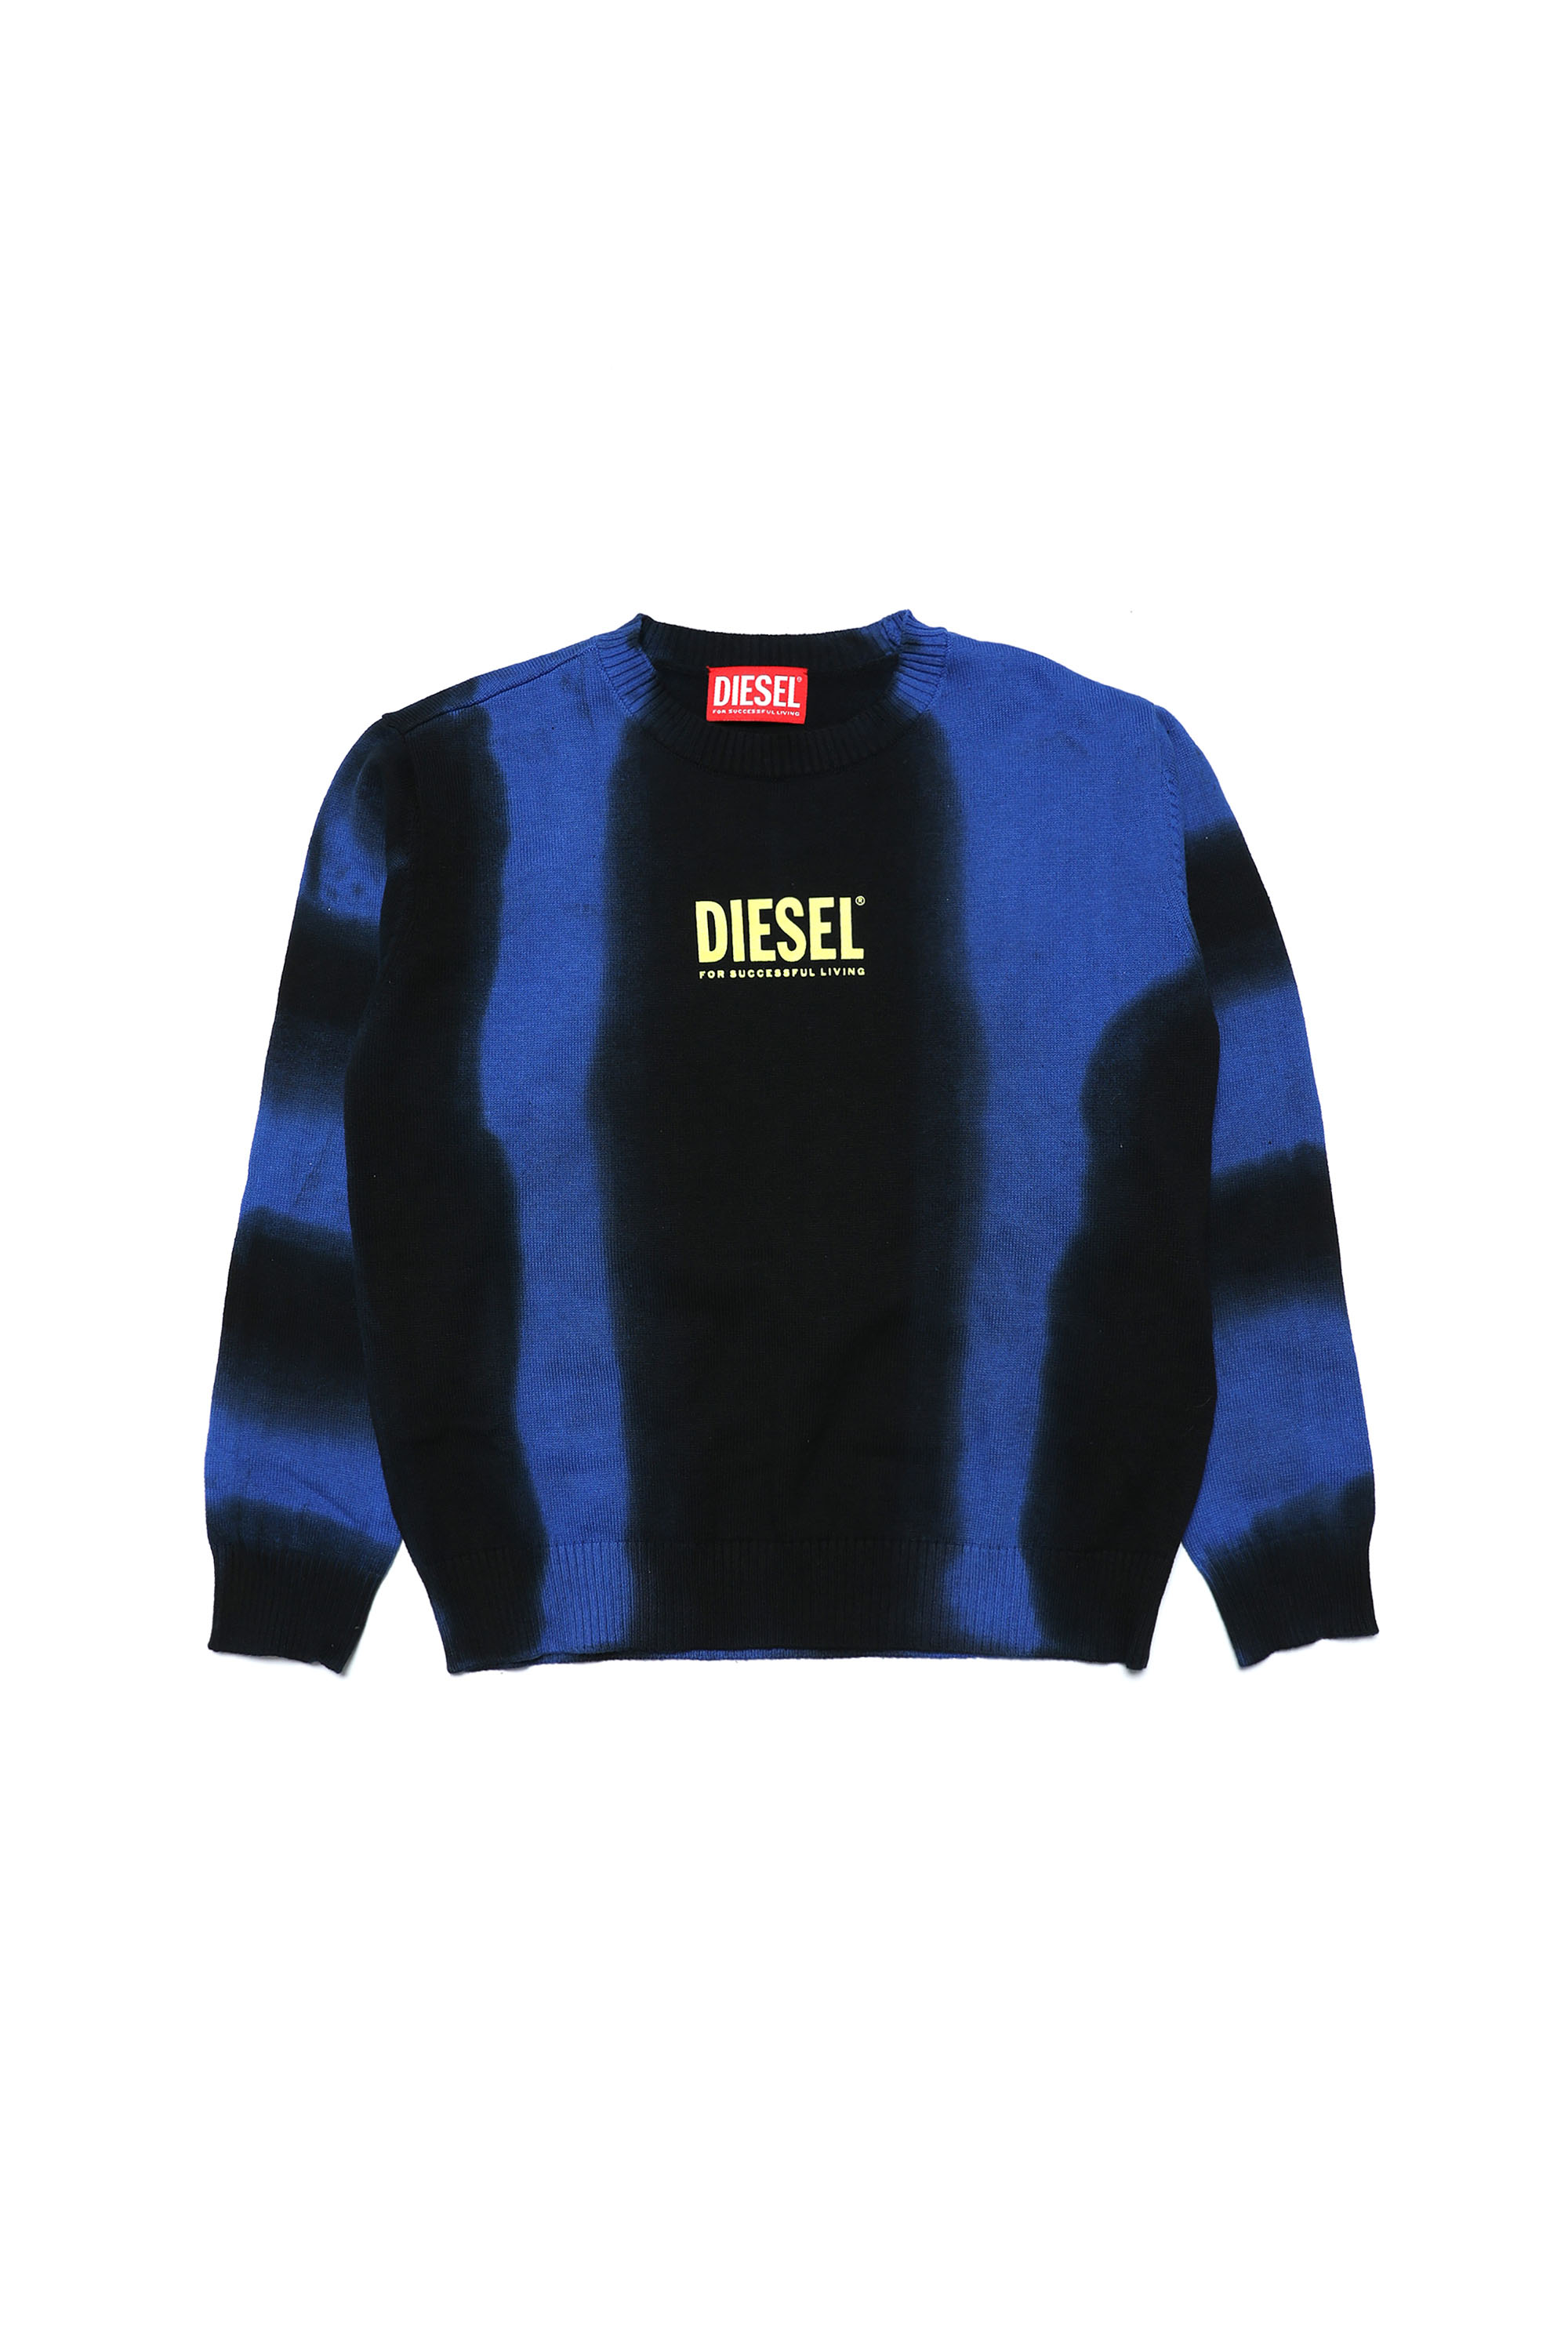 Diesel - KROGER, Bleu/Noir - Image 1